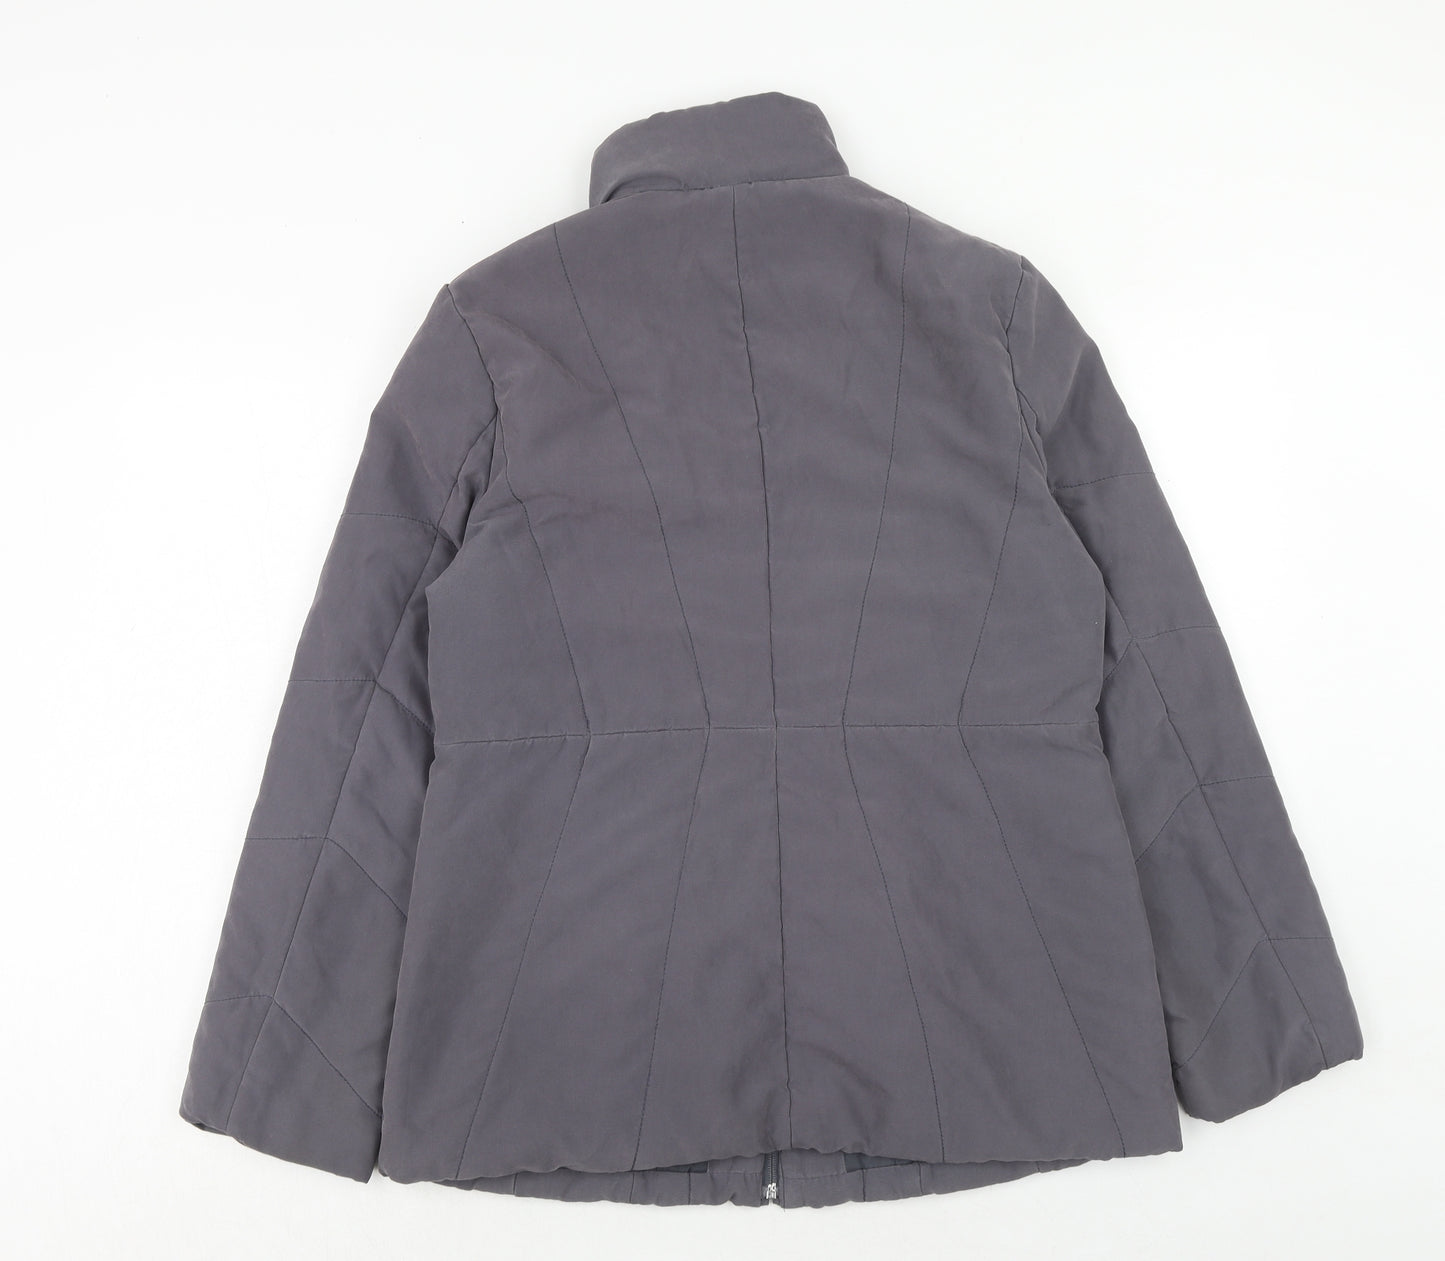 BHS Womens Grey Jacket Size 14 Zip